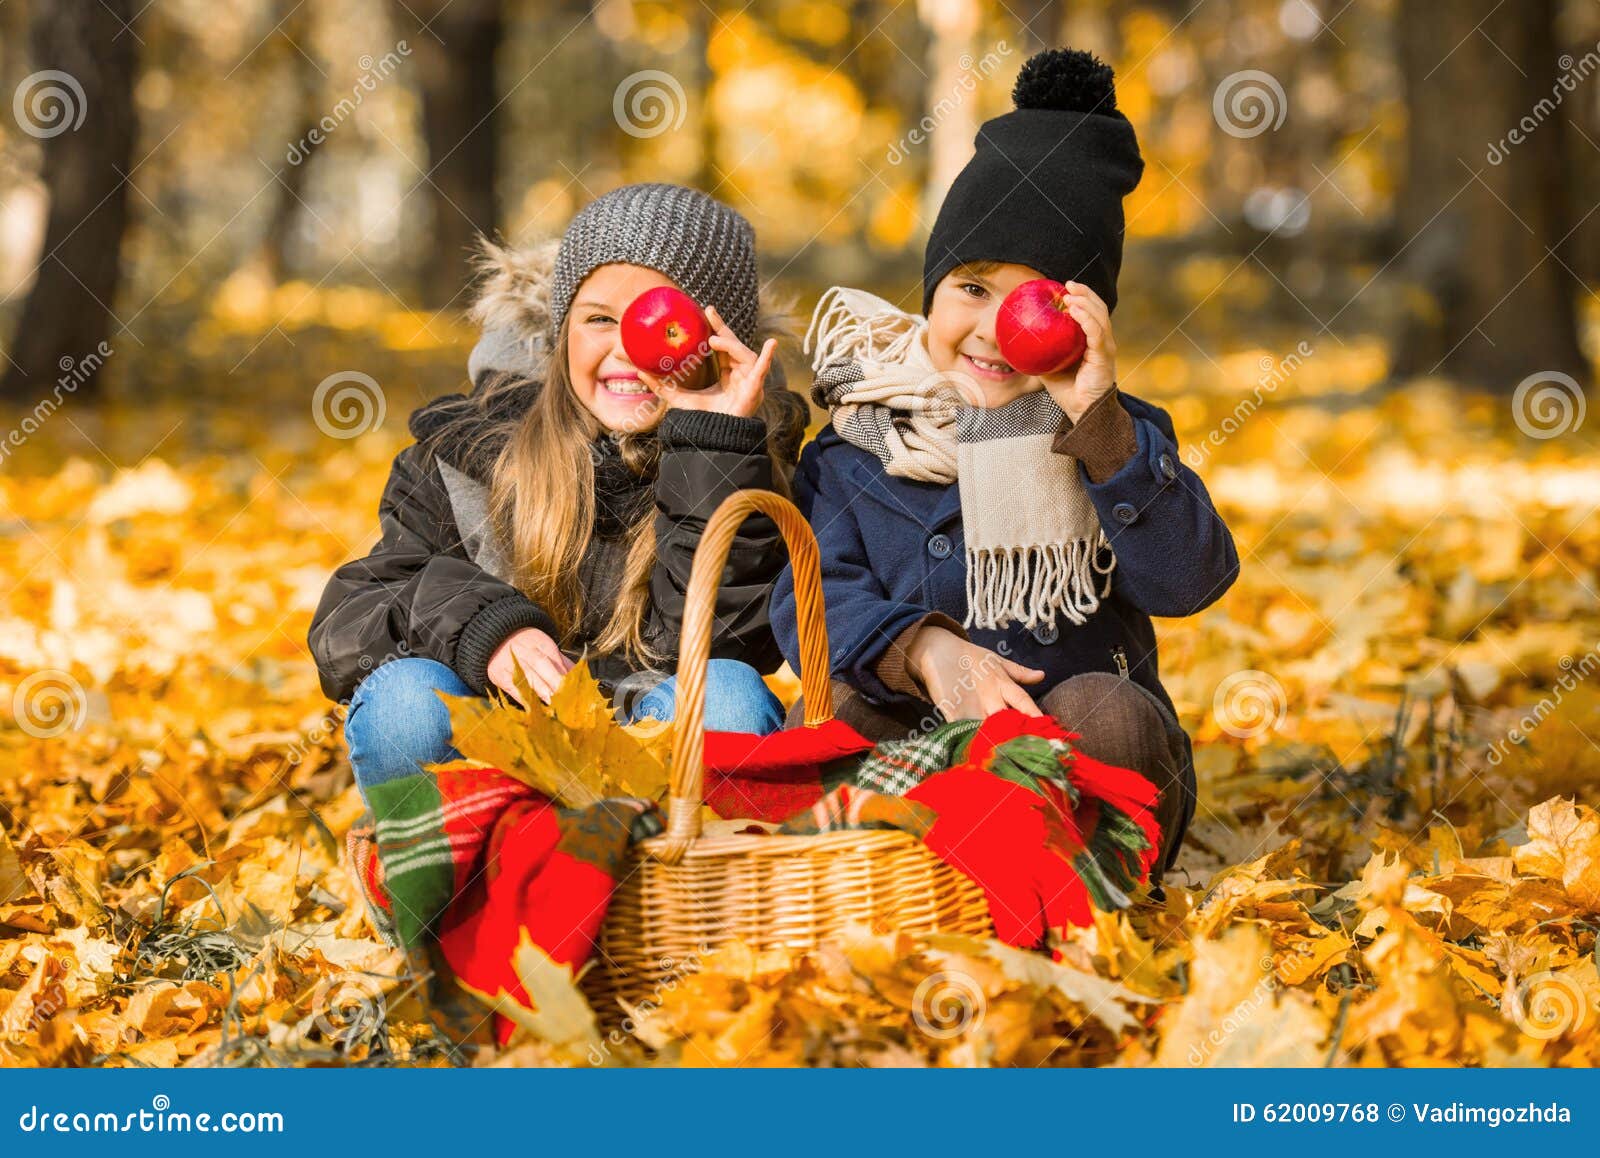 步行秋天公园. 吃红色苹果的愉快的孩子，当走在秋天公园时